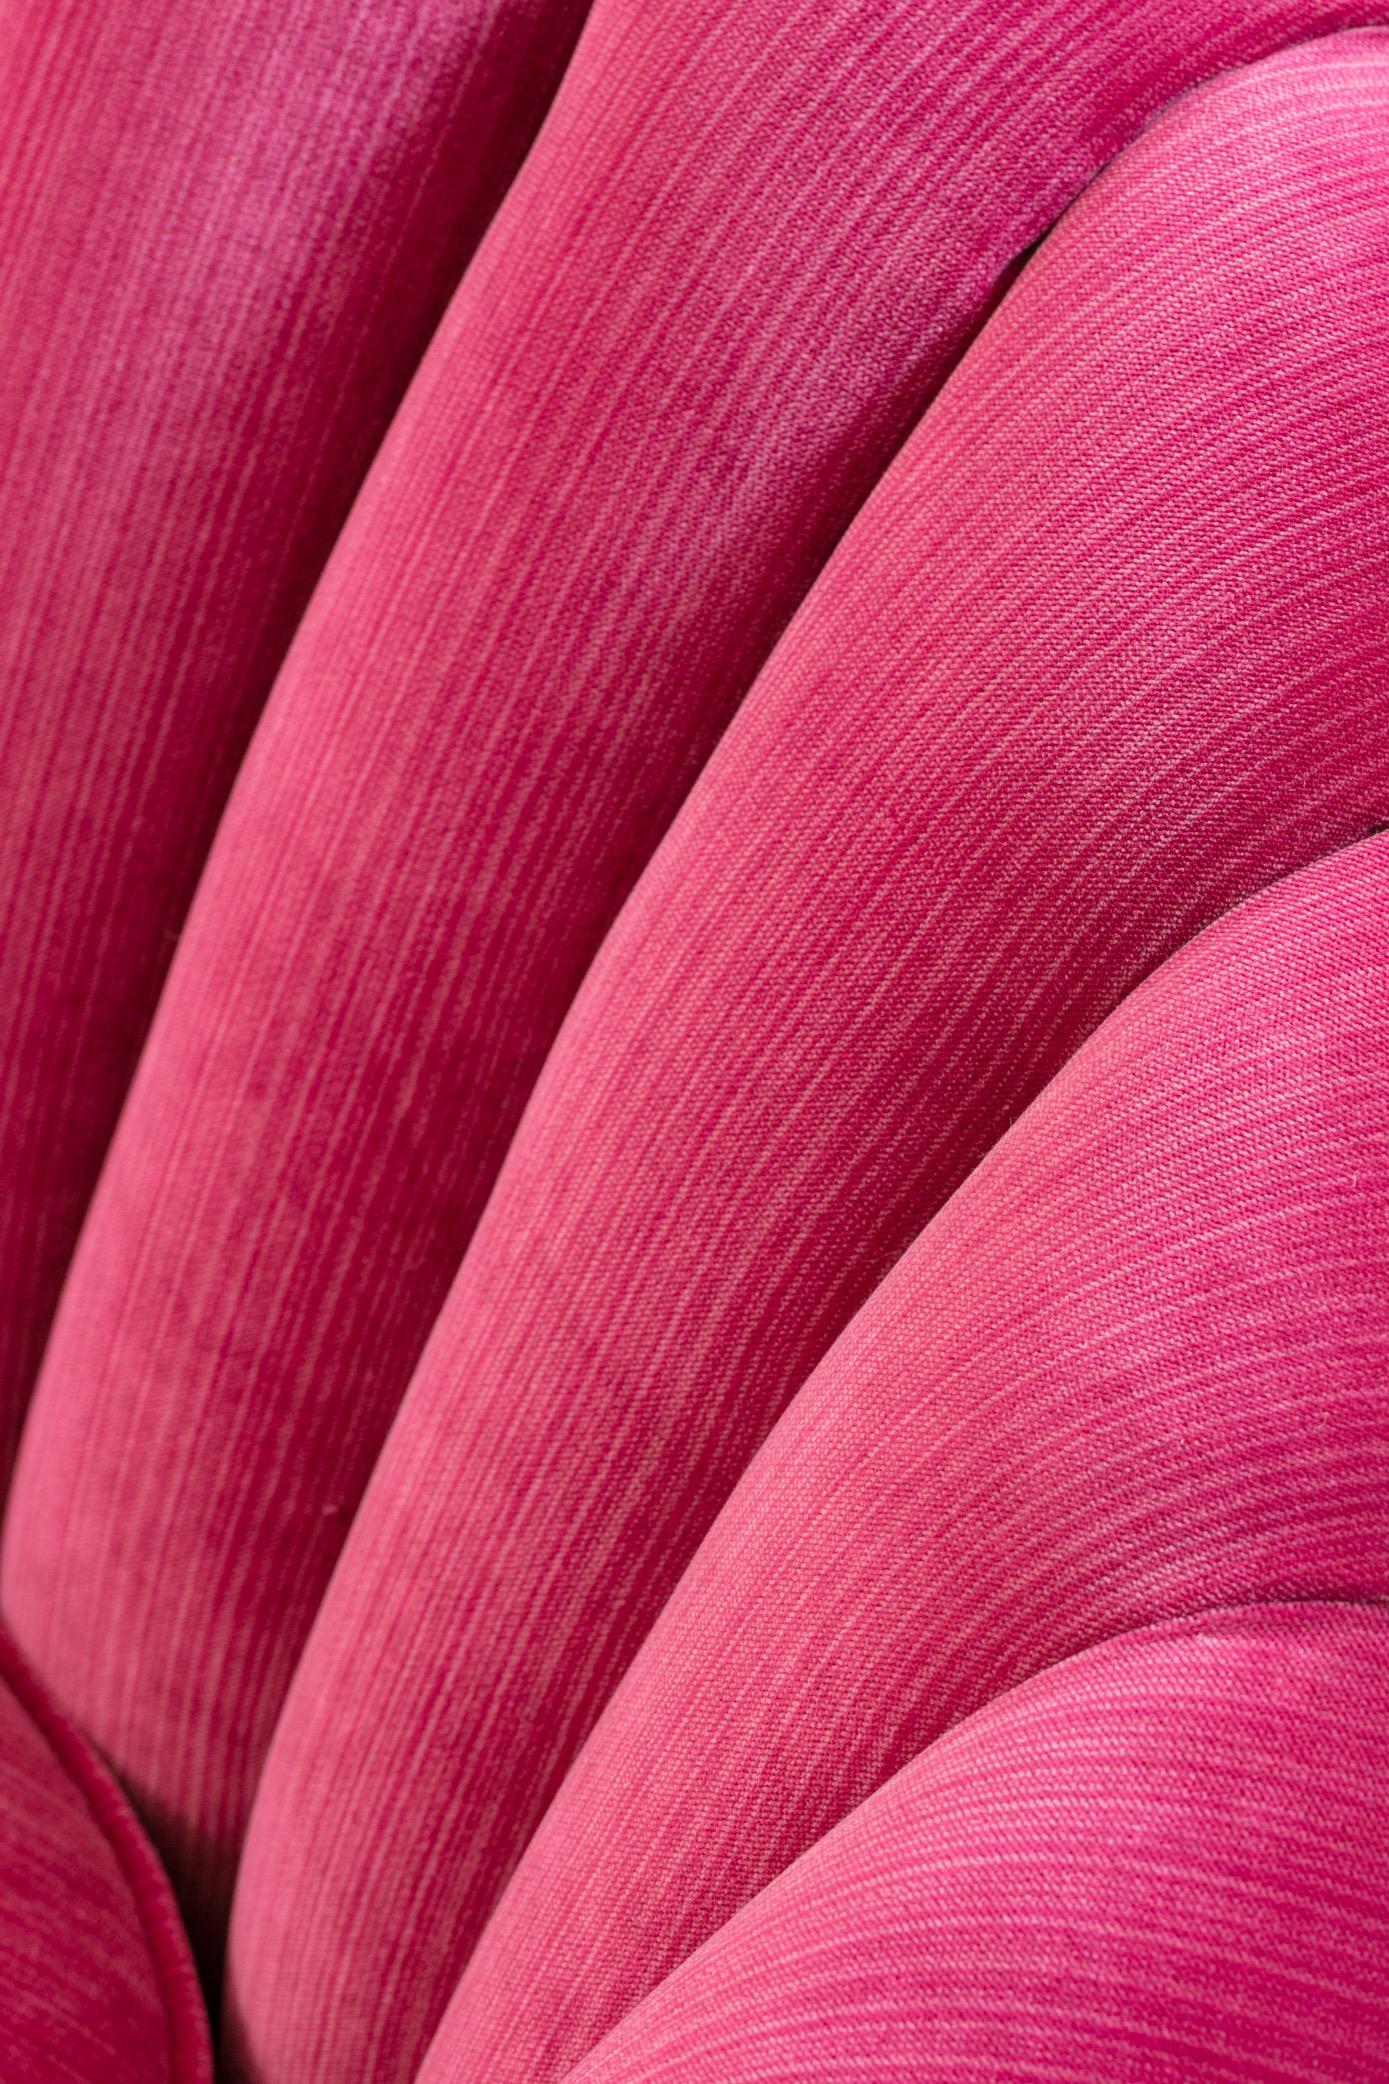 Upholstery Pair of Hollywood Regency Asymmetrical Slipper Chairs in Hot Pink Strie Velvet